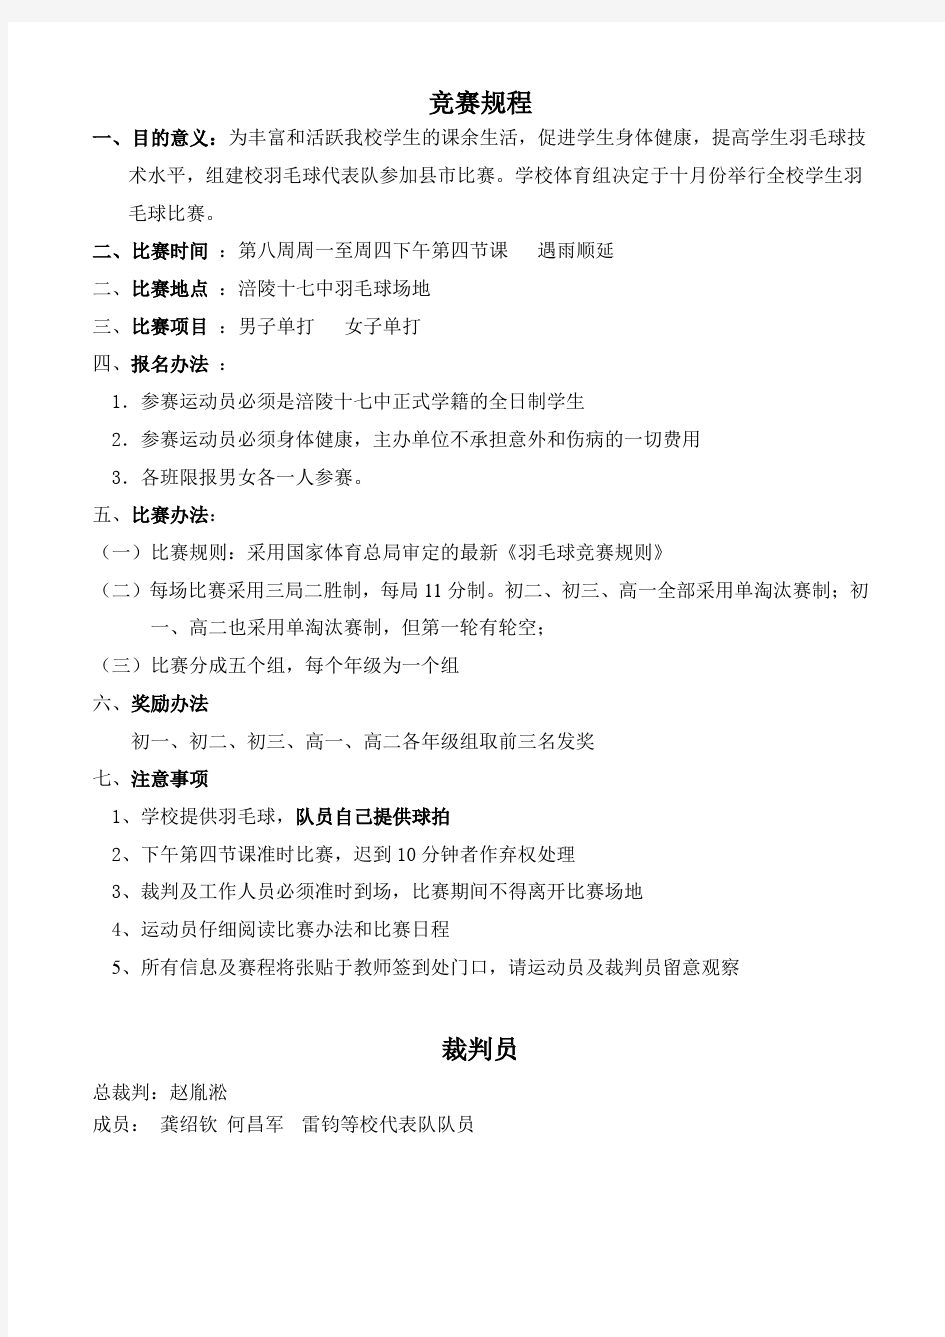 重庆市涪陵区第十七中学校第二届羽毛球比赛秩序册